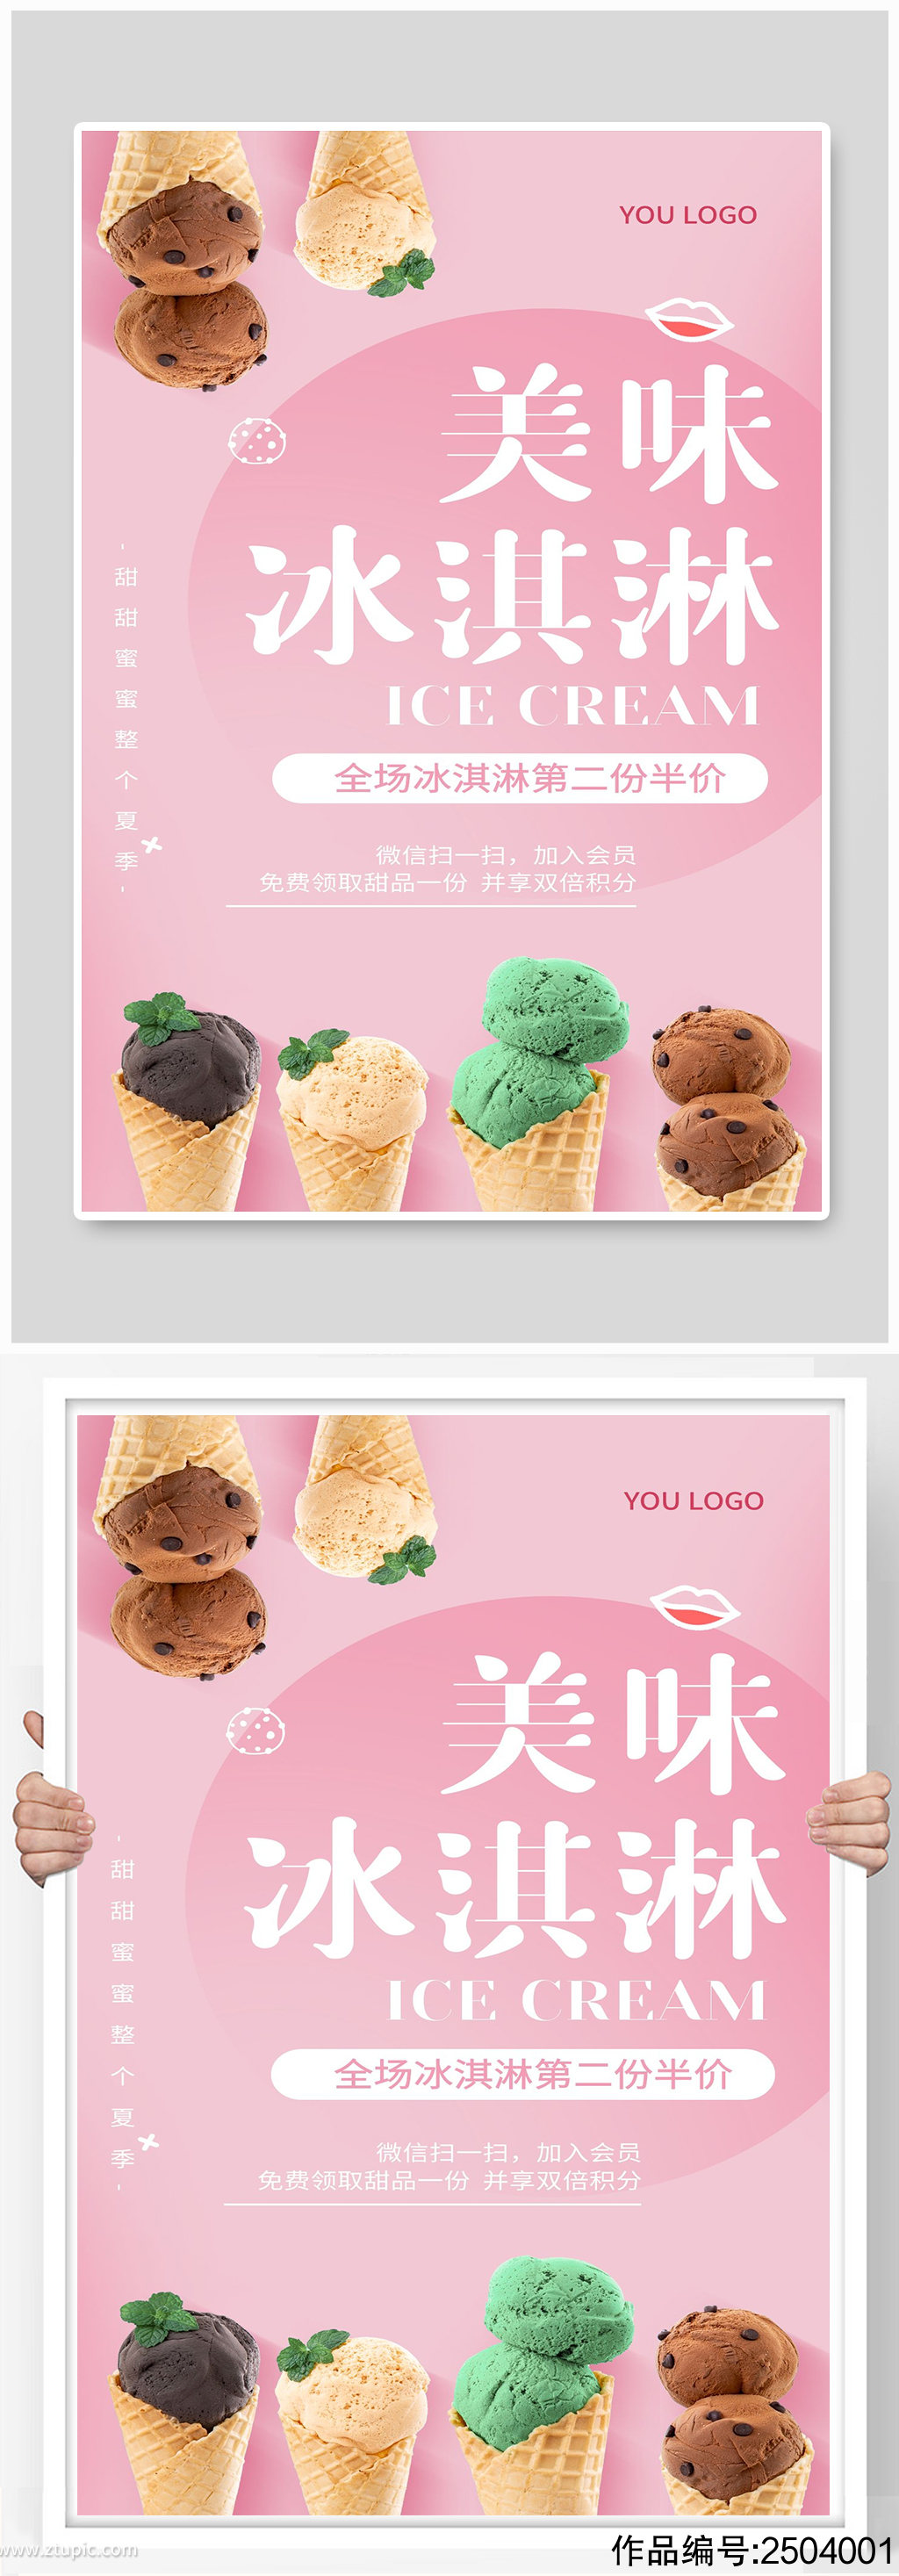 冰淇淋宣传海报设计